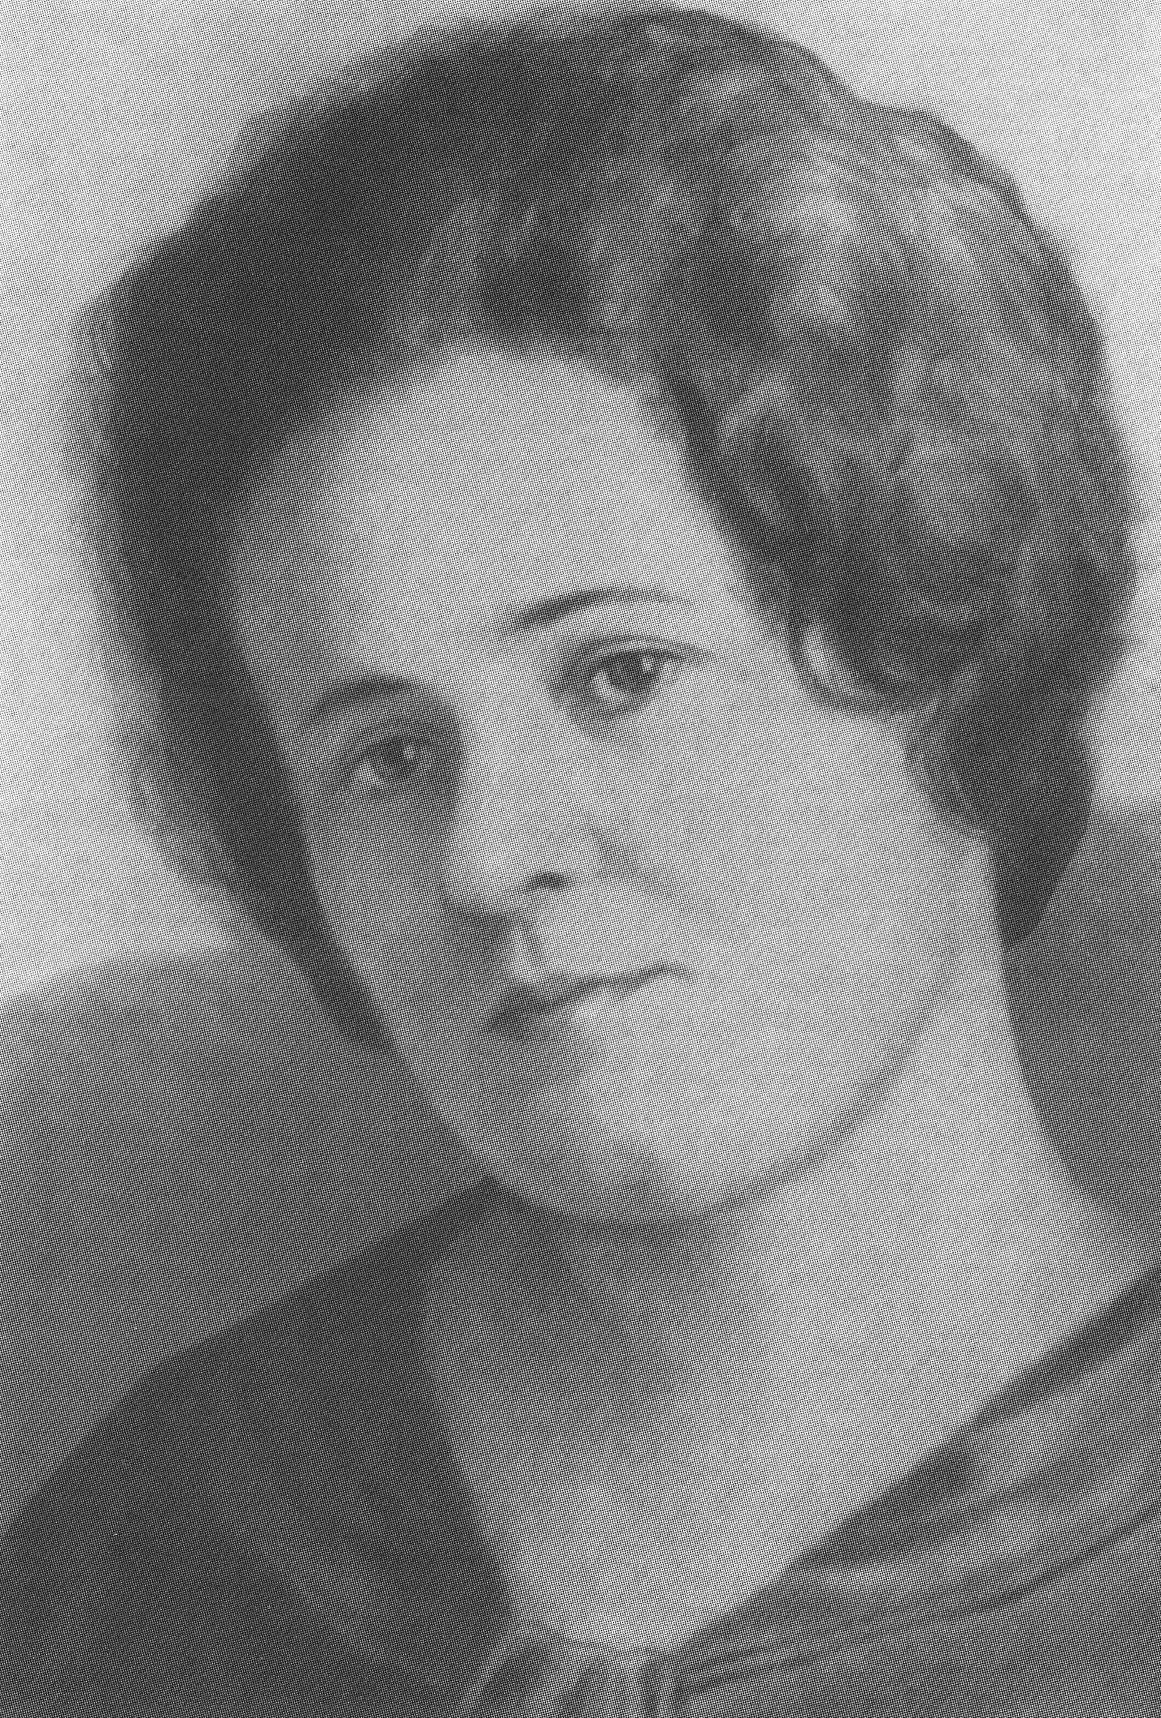 Нина Николаевна Грин. 1920-е гг.